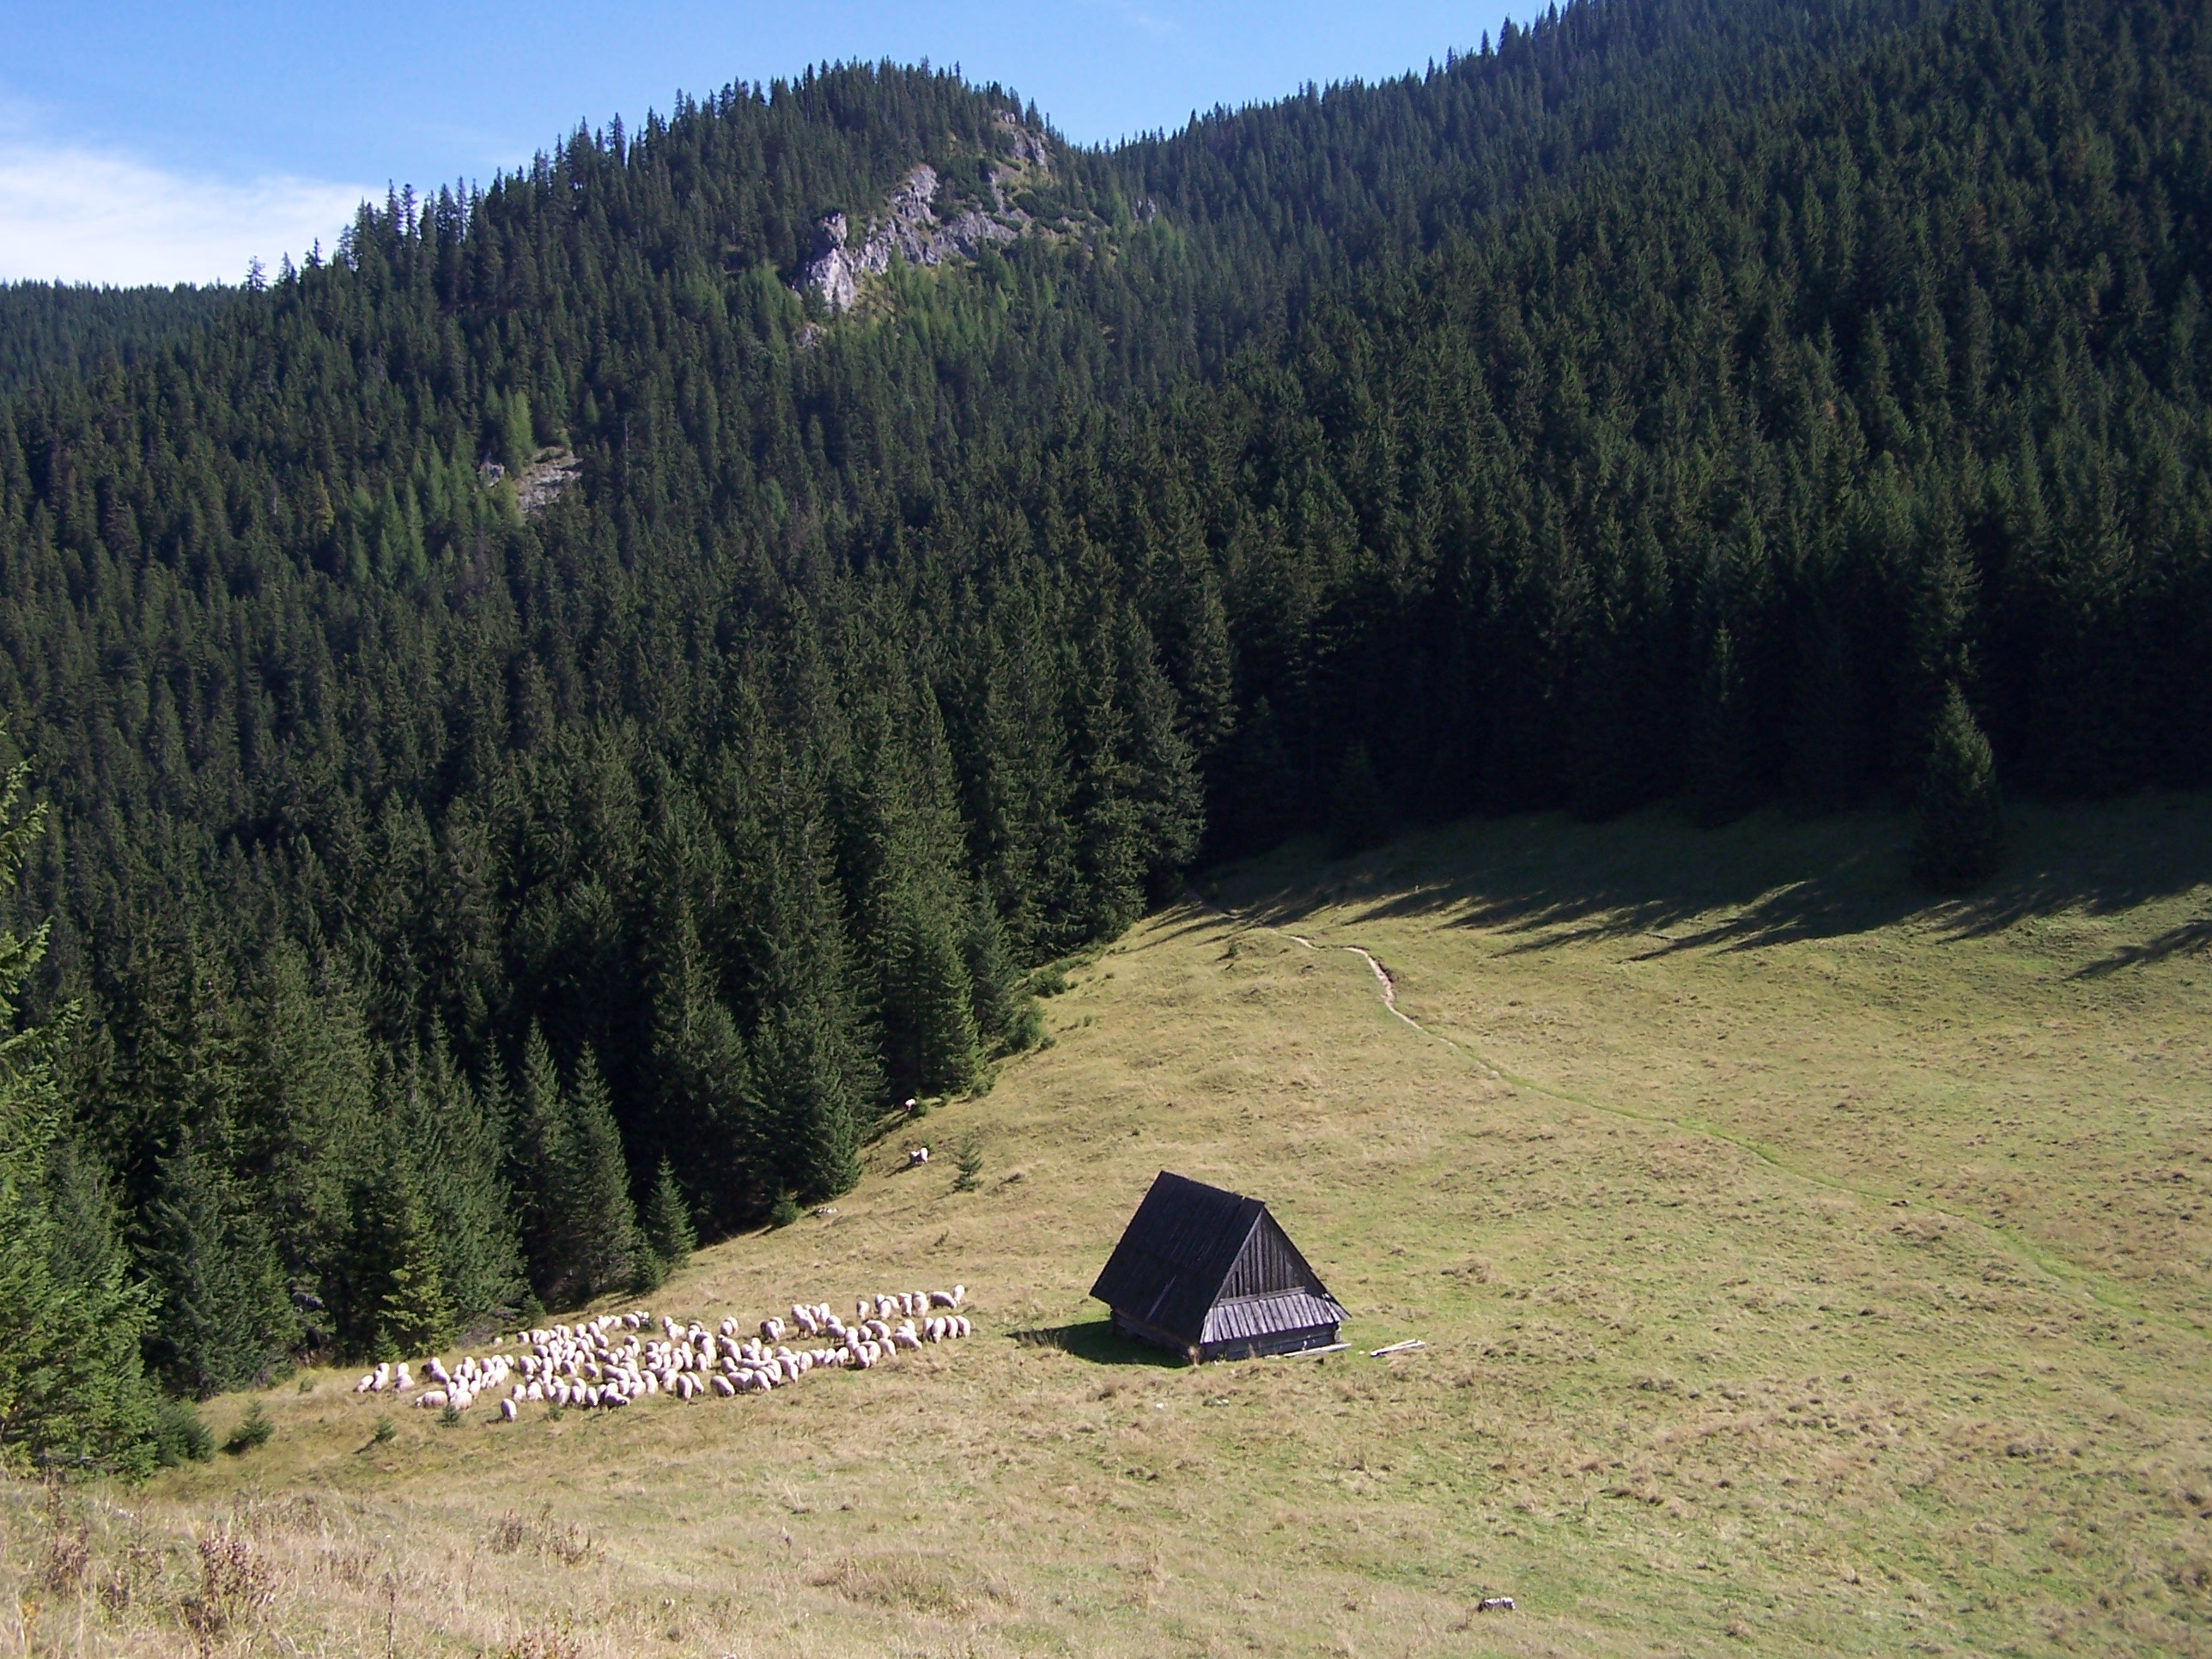 'Polana Jamy (Tatra Mountains)' - photo found on Wiki Commons and attributable to Opioła Jerzy